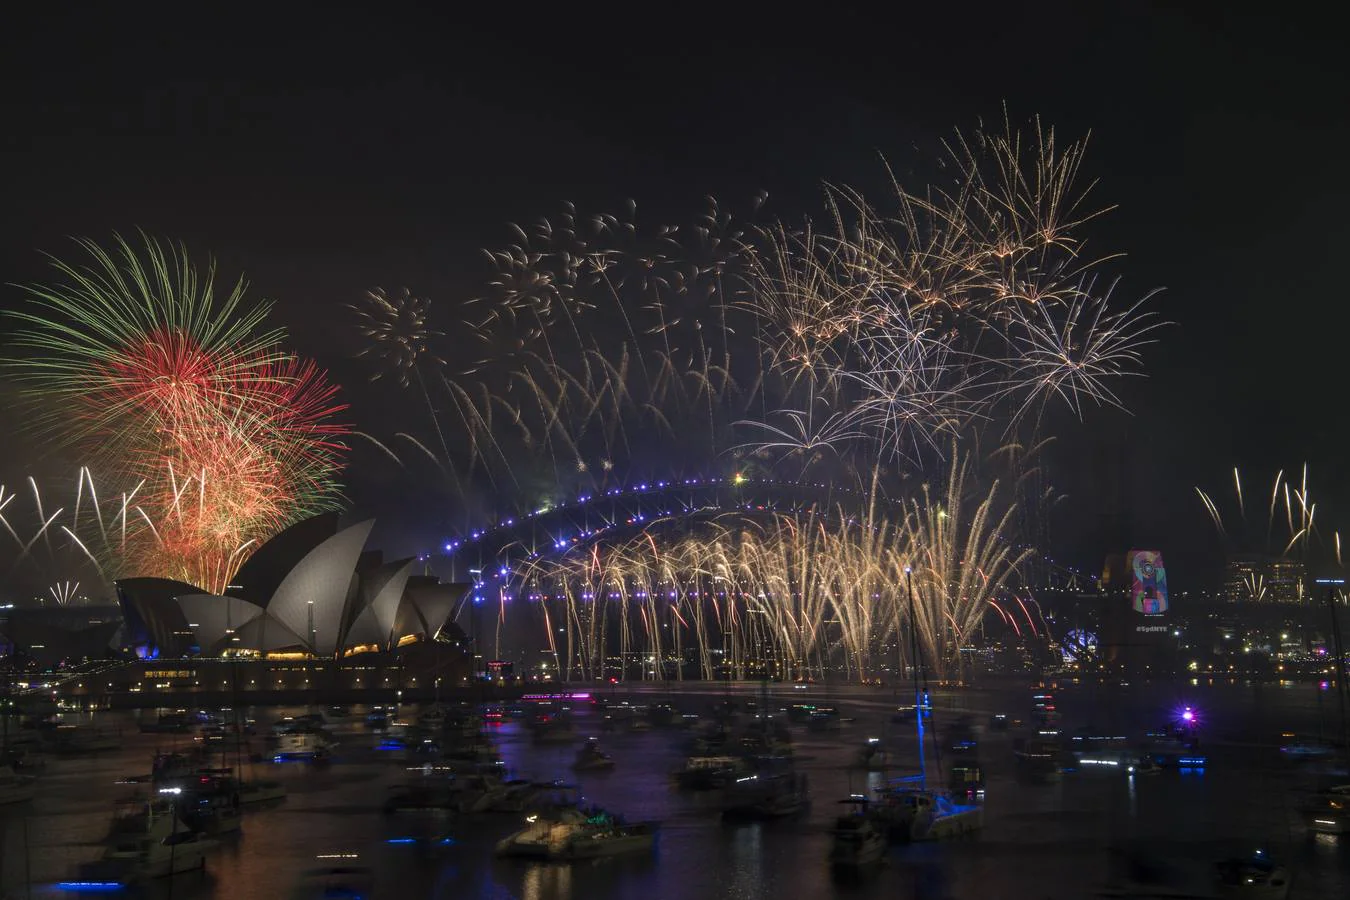 Sídney recibe el año nuevo con un gran espectáculo de fuegos artificiales sobre el puente de la bahía